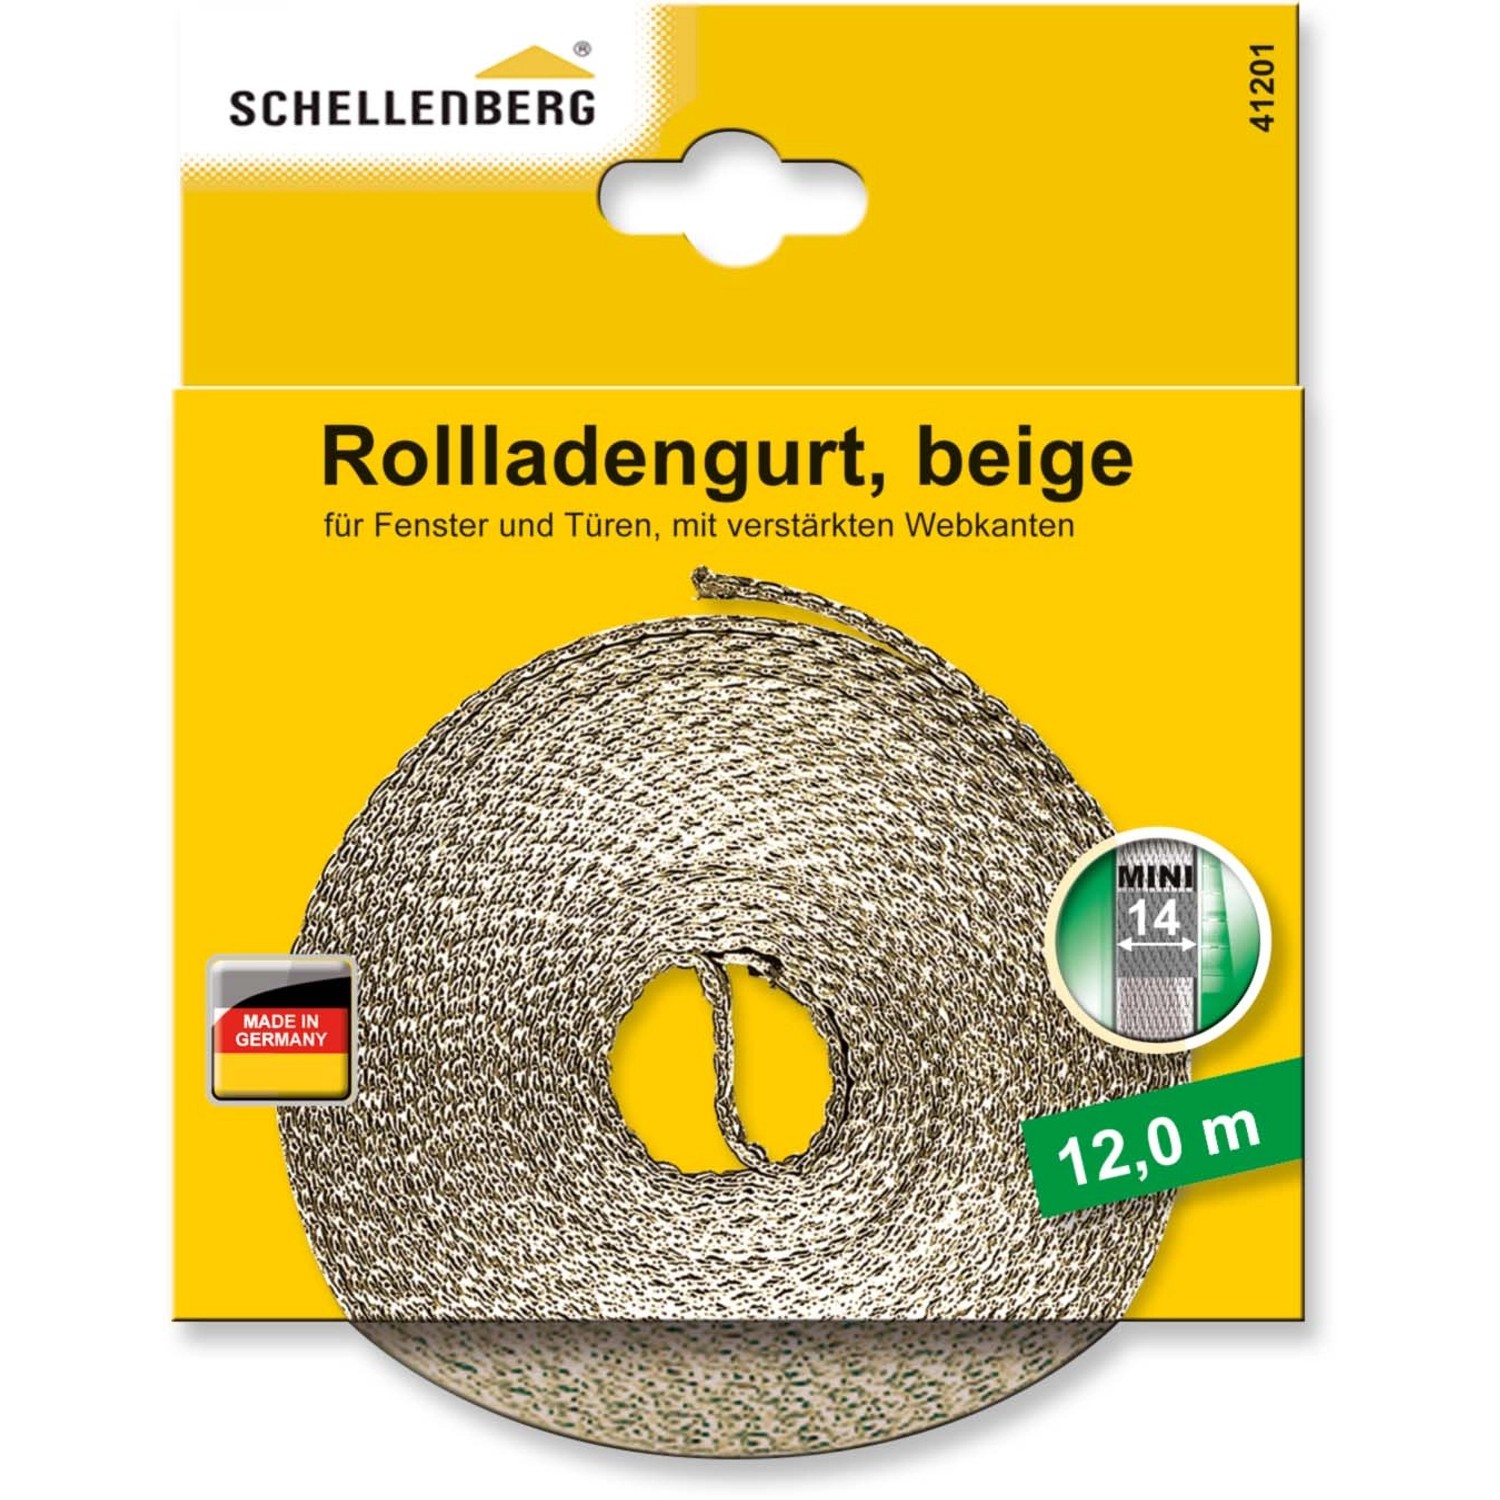 Schellenberg Rollladengurt Mini 14 mm 12 m Beige von Schellenberg